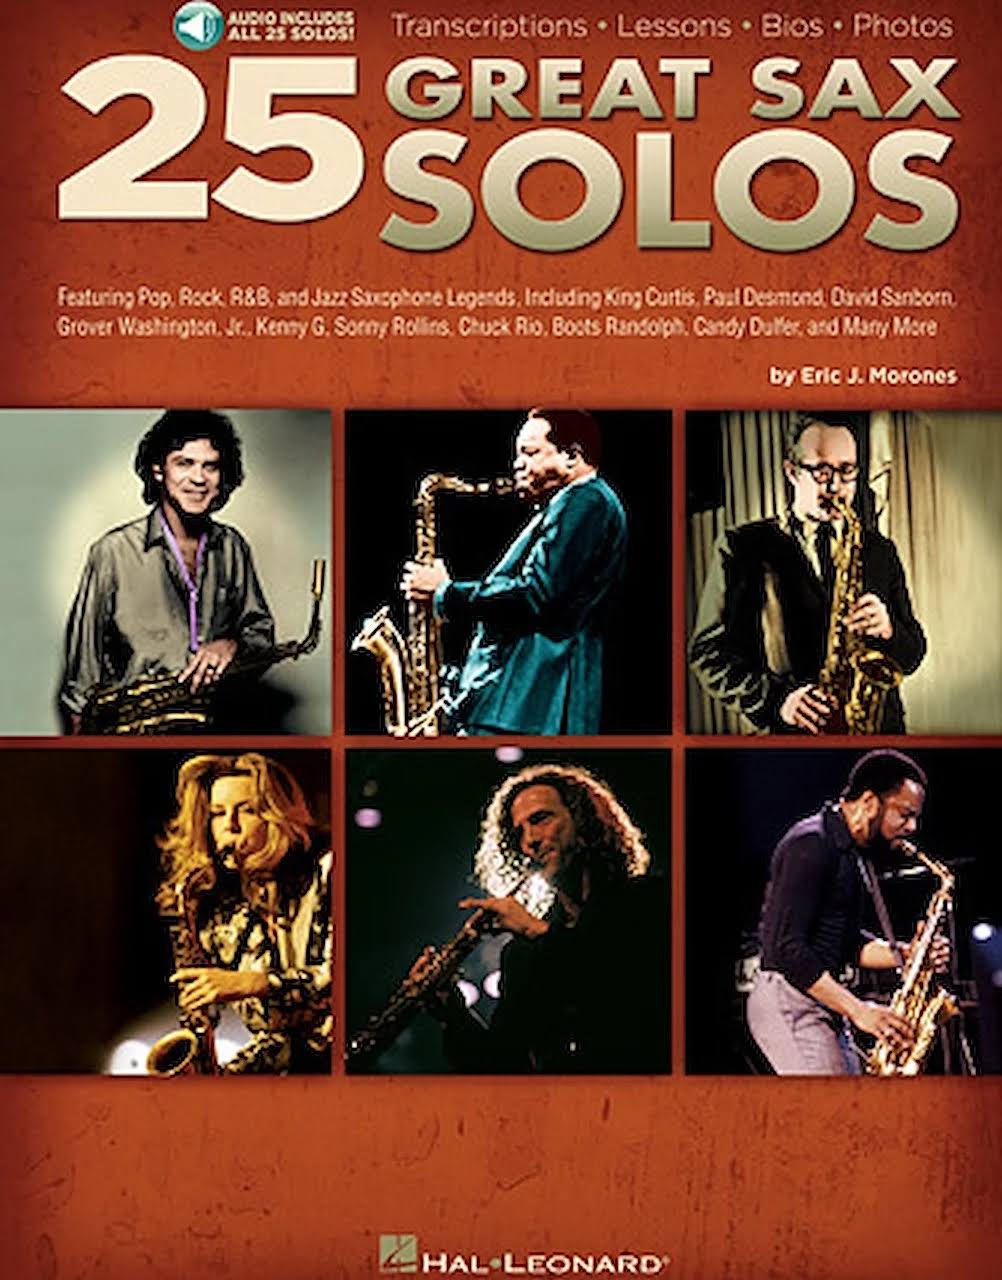 25 Great Sax Solos Alto/Tenor Sax Book/Ola